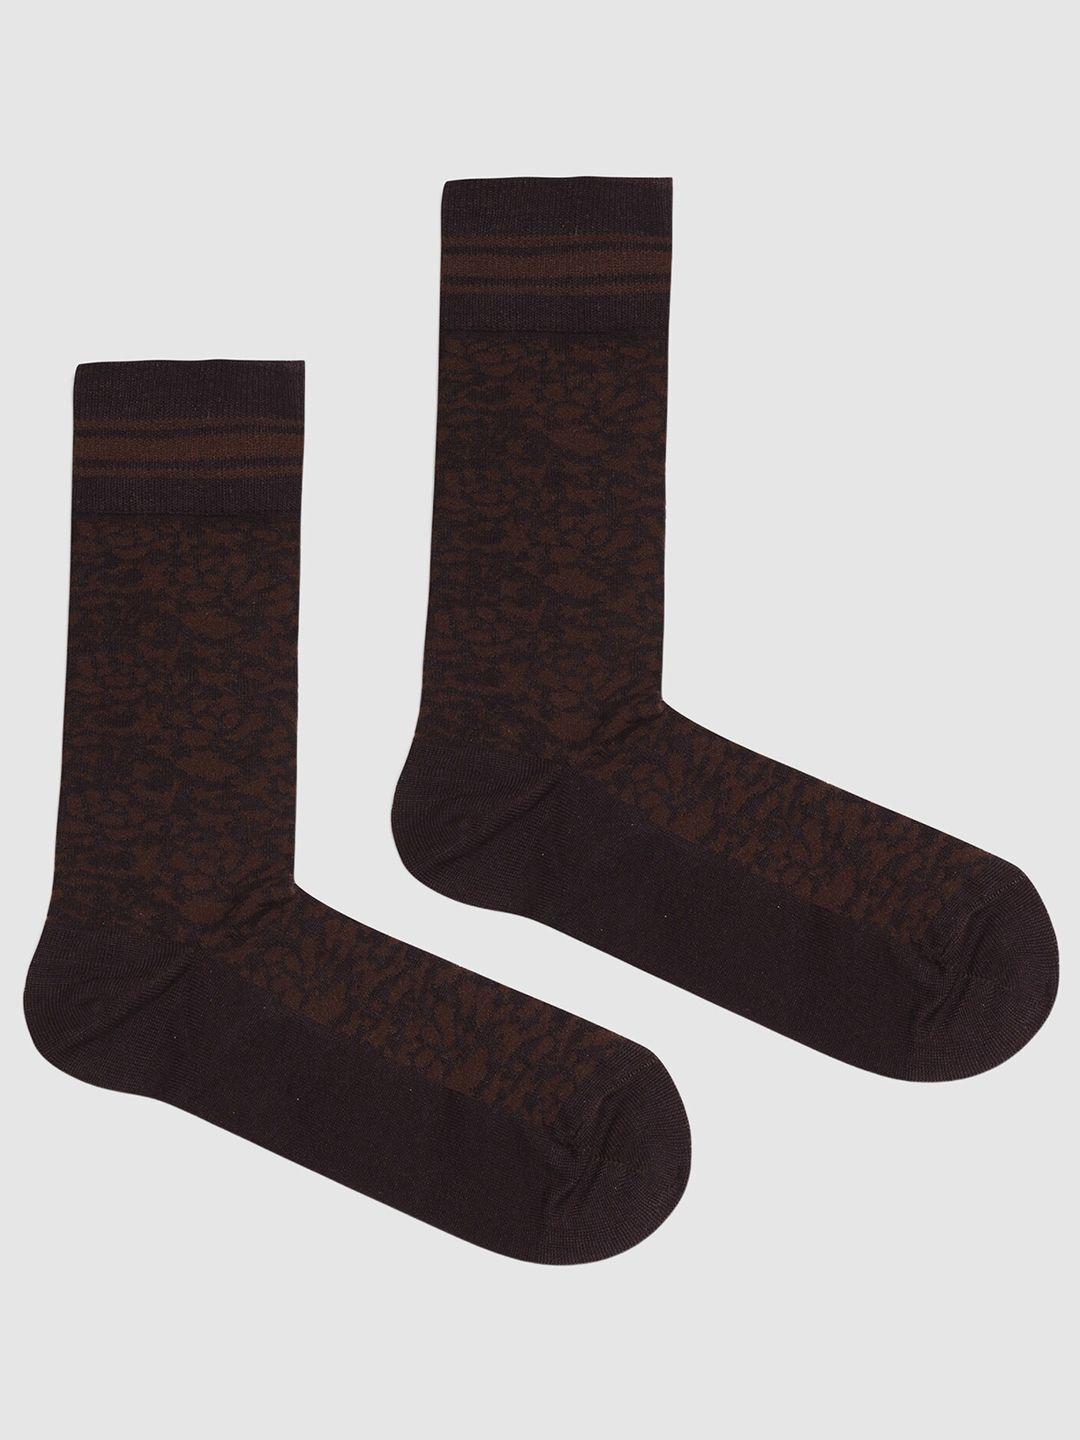 blackberrys men patterned cotton calf length socks